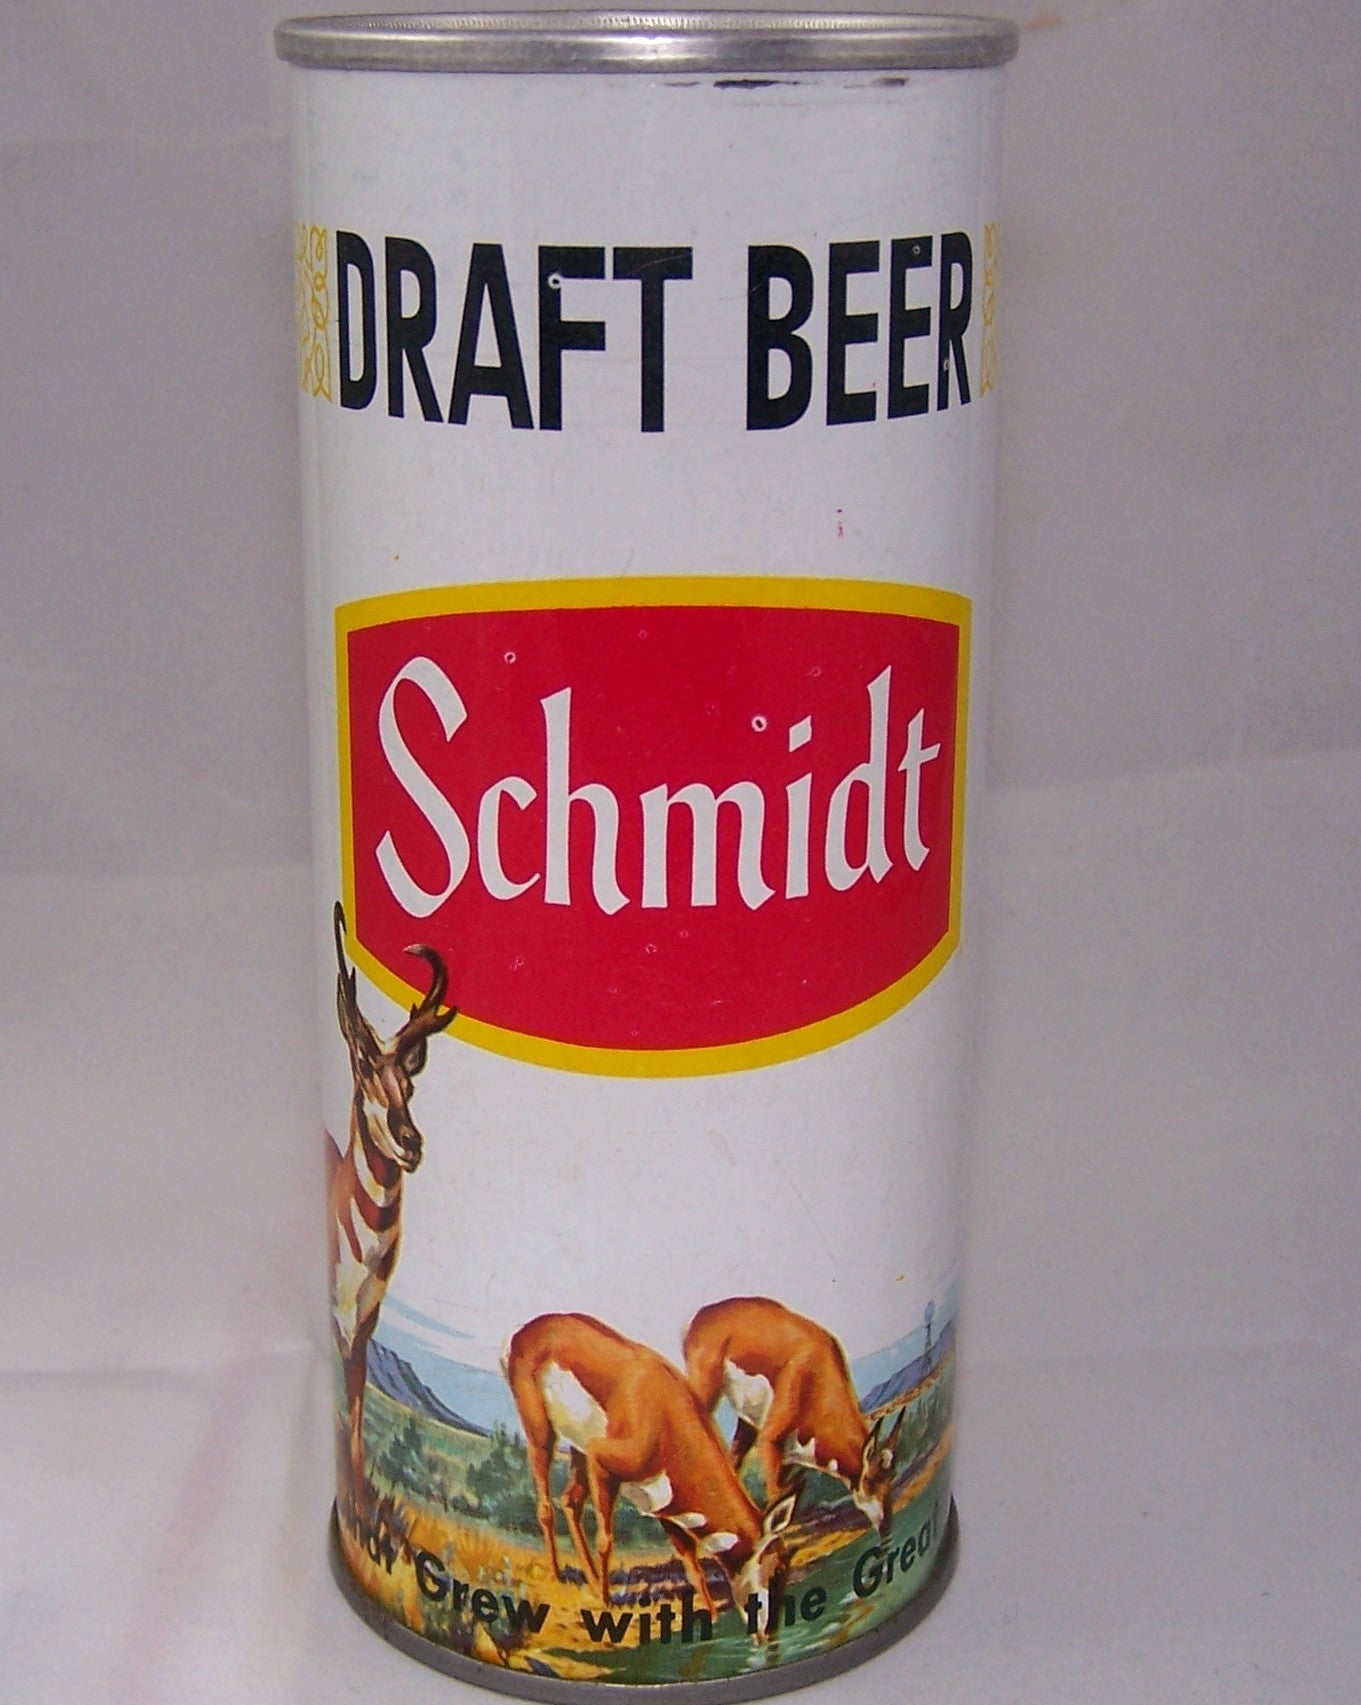 Schmidt Draft Beer (Antelope) USBC II 202-set 27-3, Grade 1 Sold!!